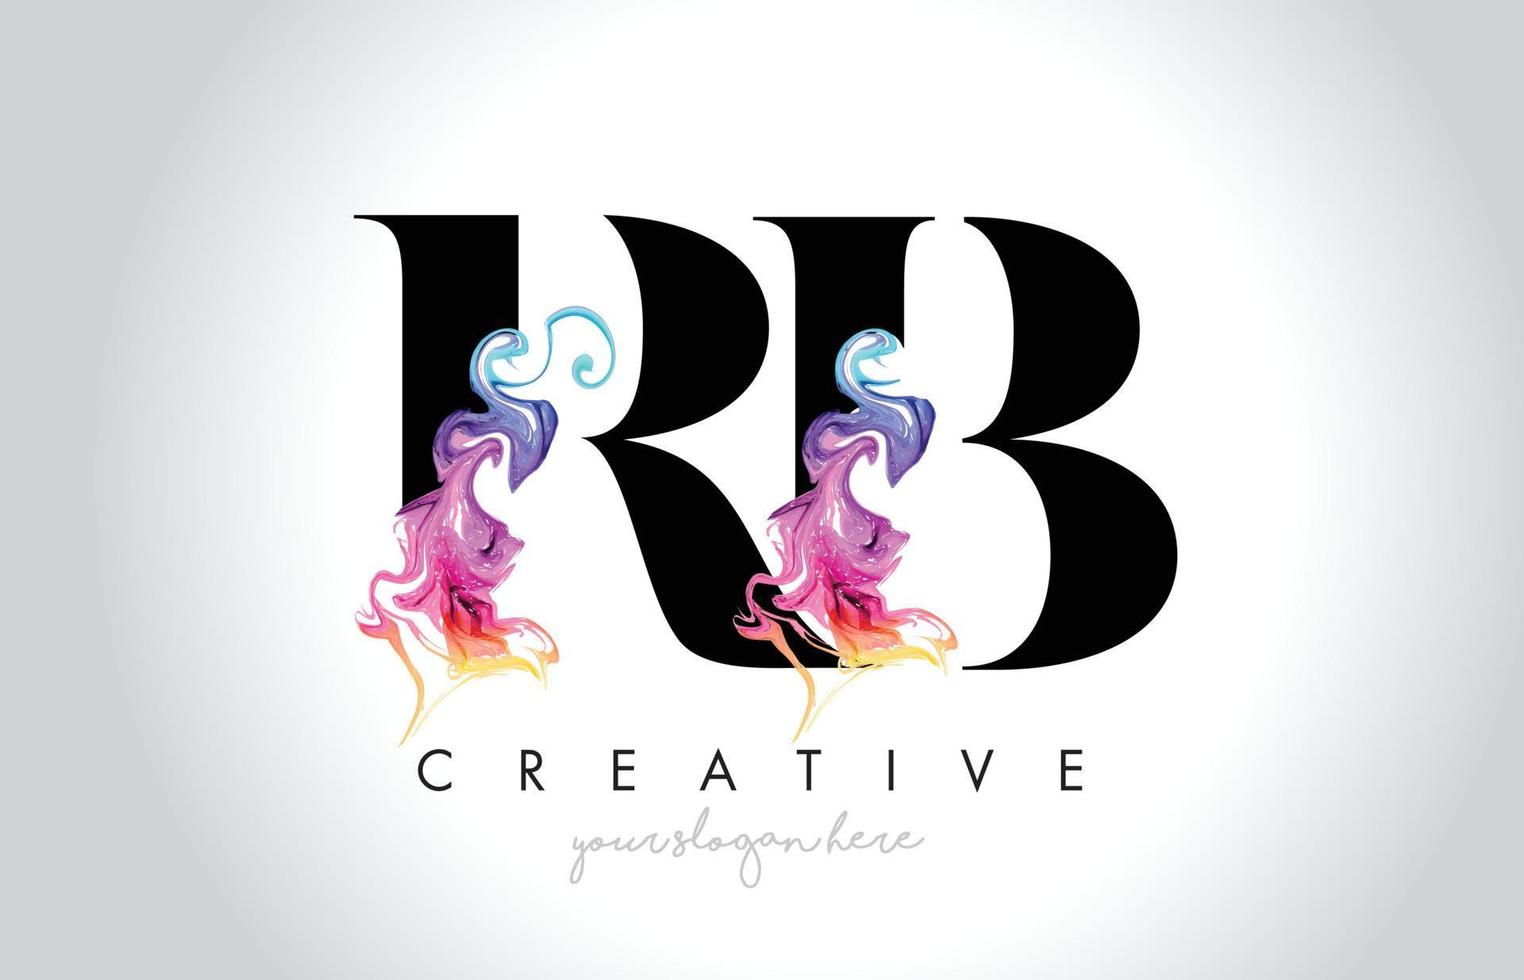 création de logo de lettre créative vibrante rb avec vecteur fluide d'encre de fumée colorée